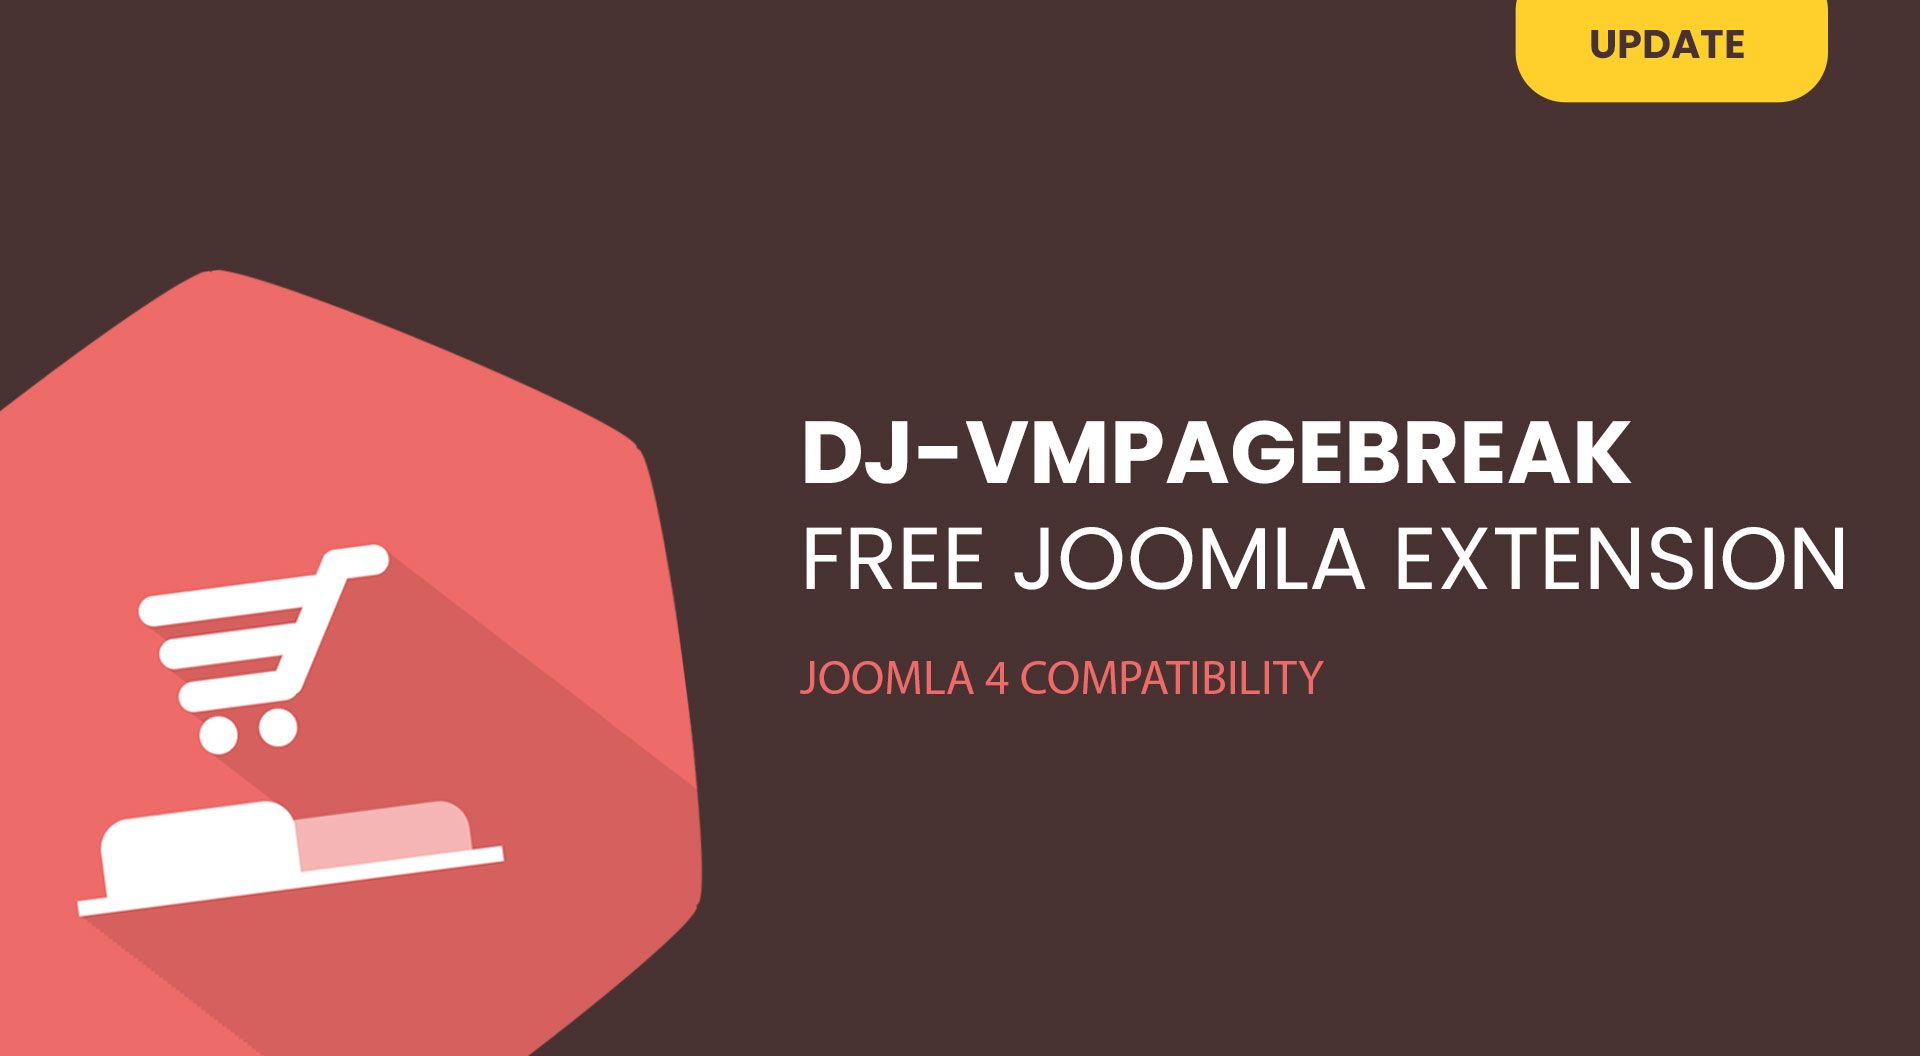 DJ-VMPageBreak free plugin is now compatible with Joomla 4